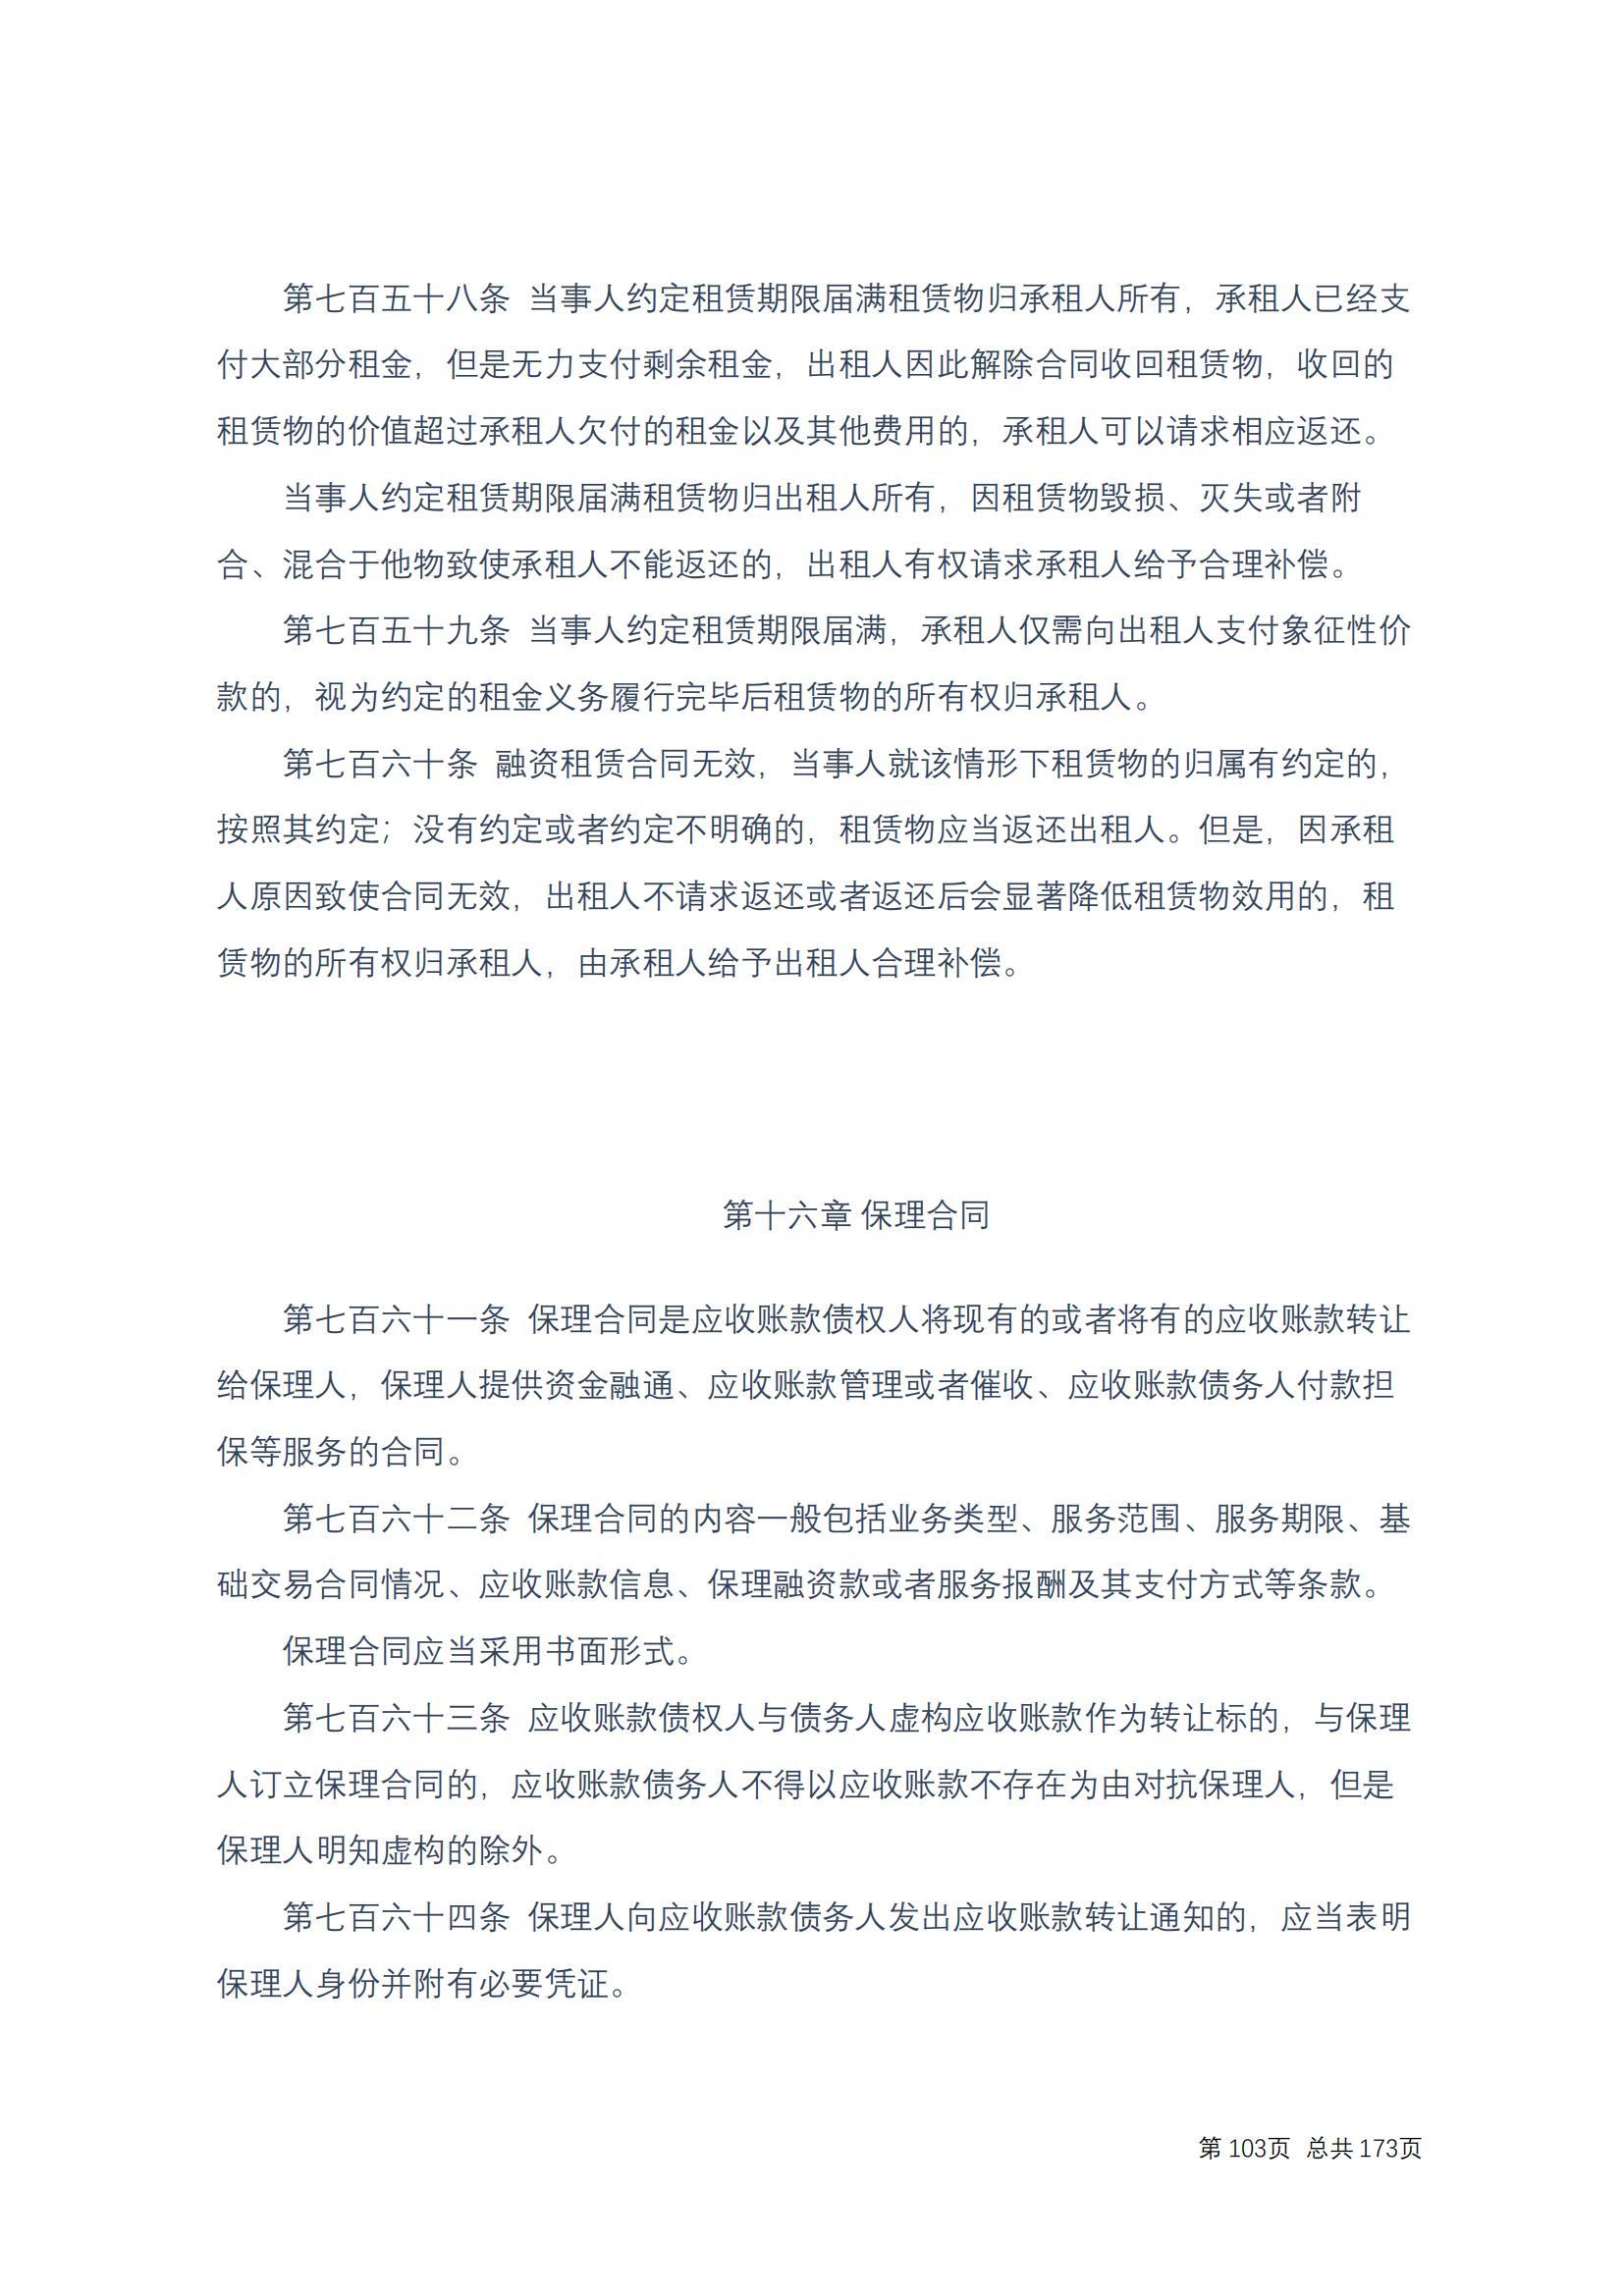 中华人民共和国民法典 修改过_102